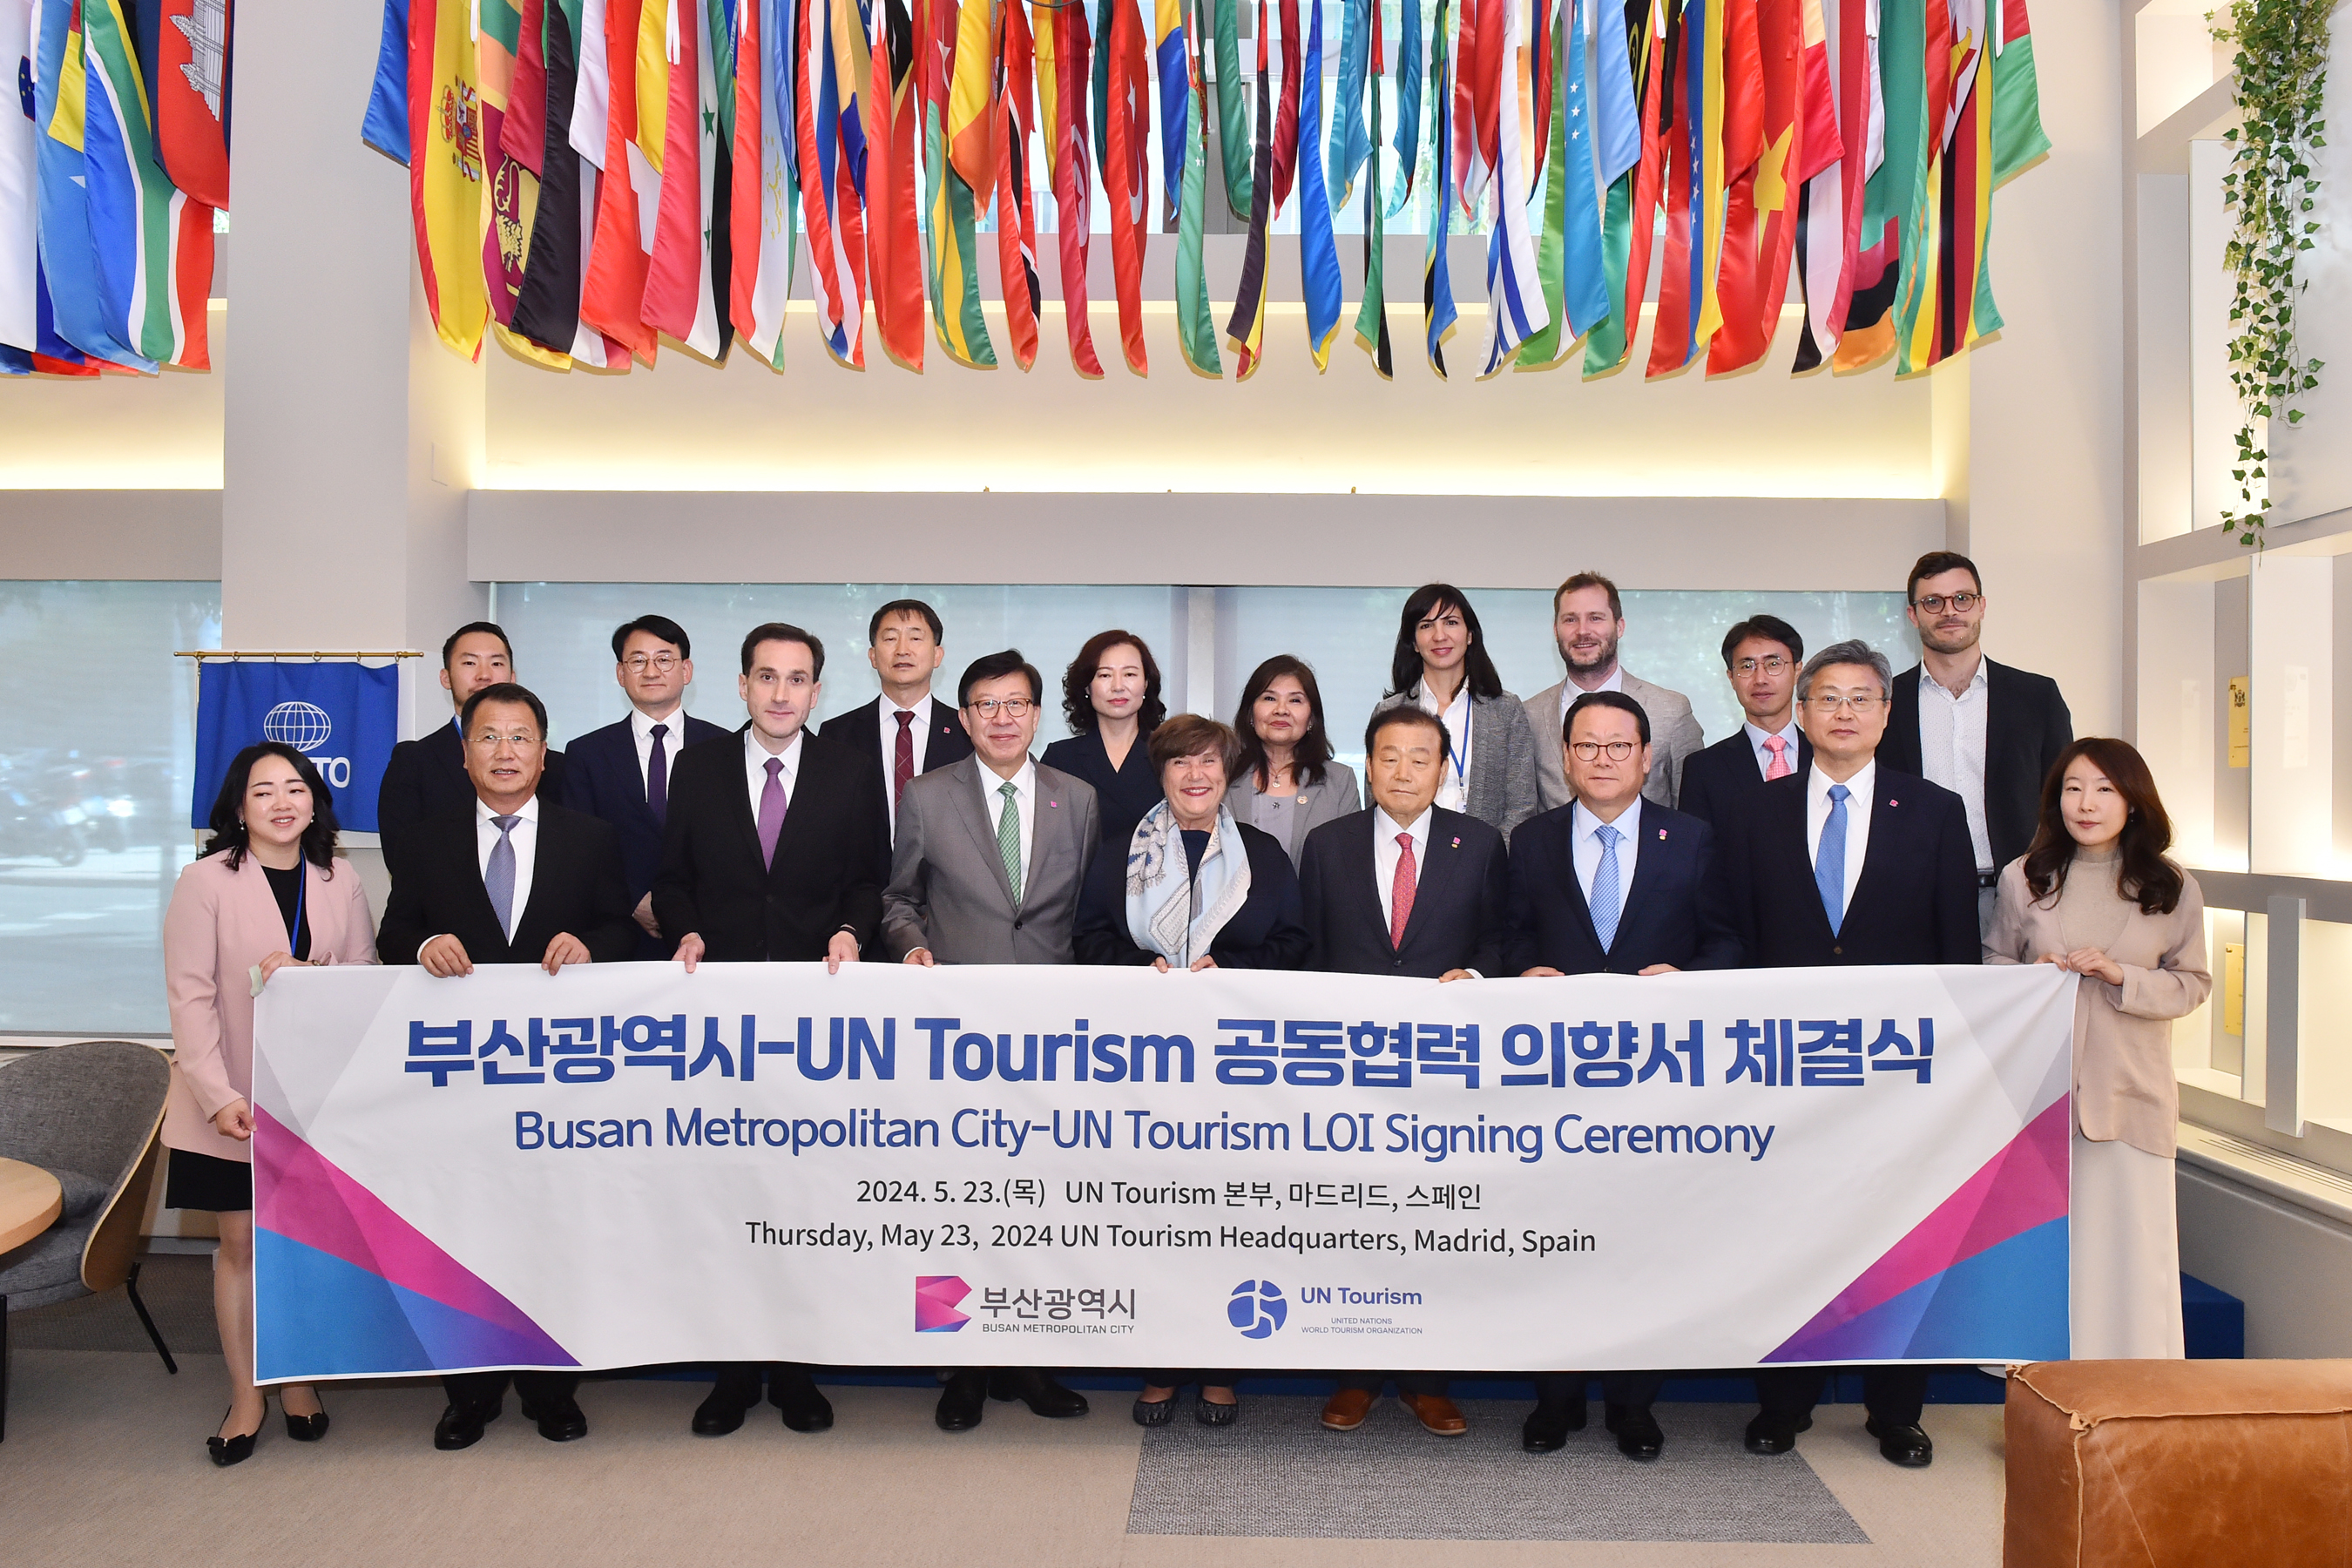 20240523 부산시-UN Tourism 공동협력 의향서 체결식(유엔투어리즘 본부) 사진2